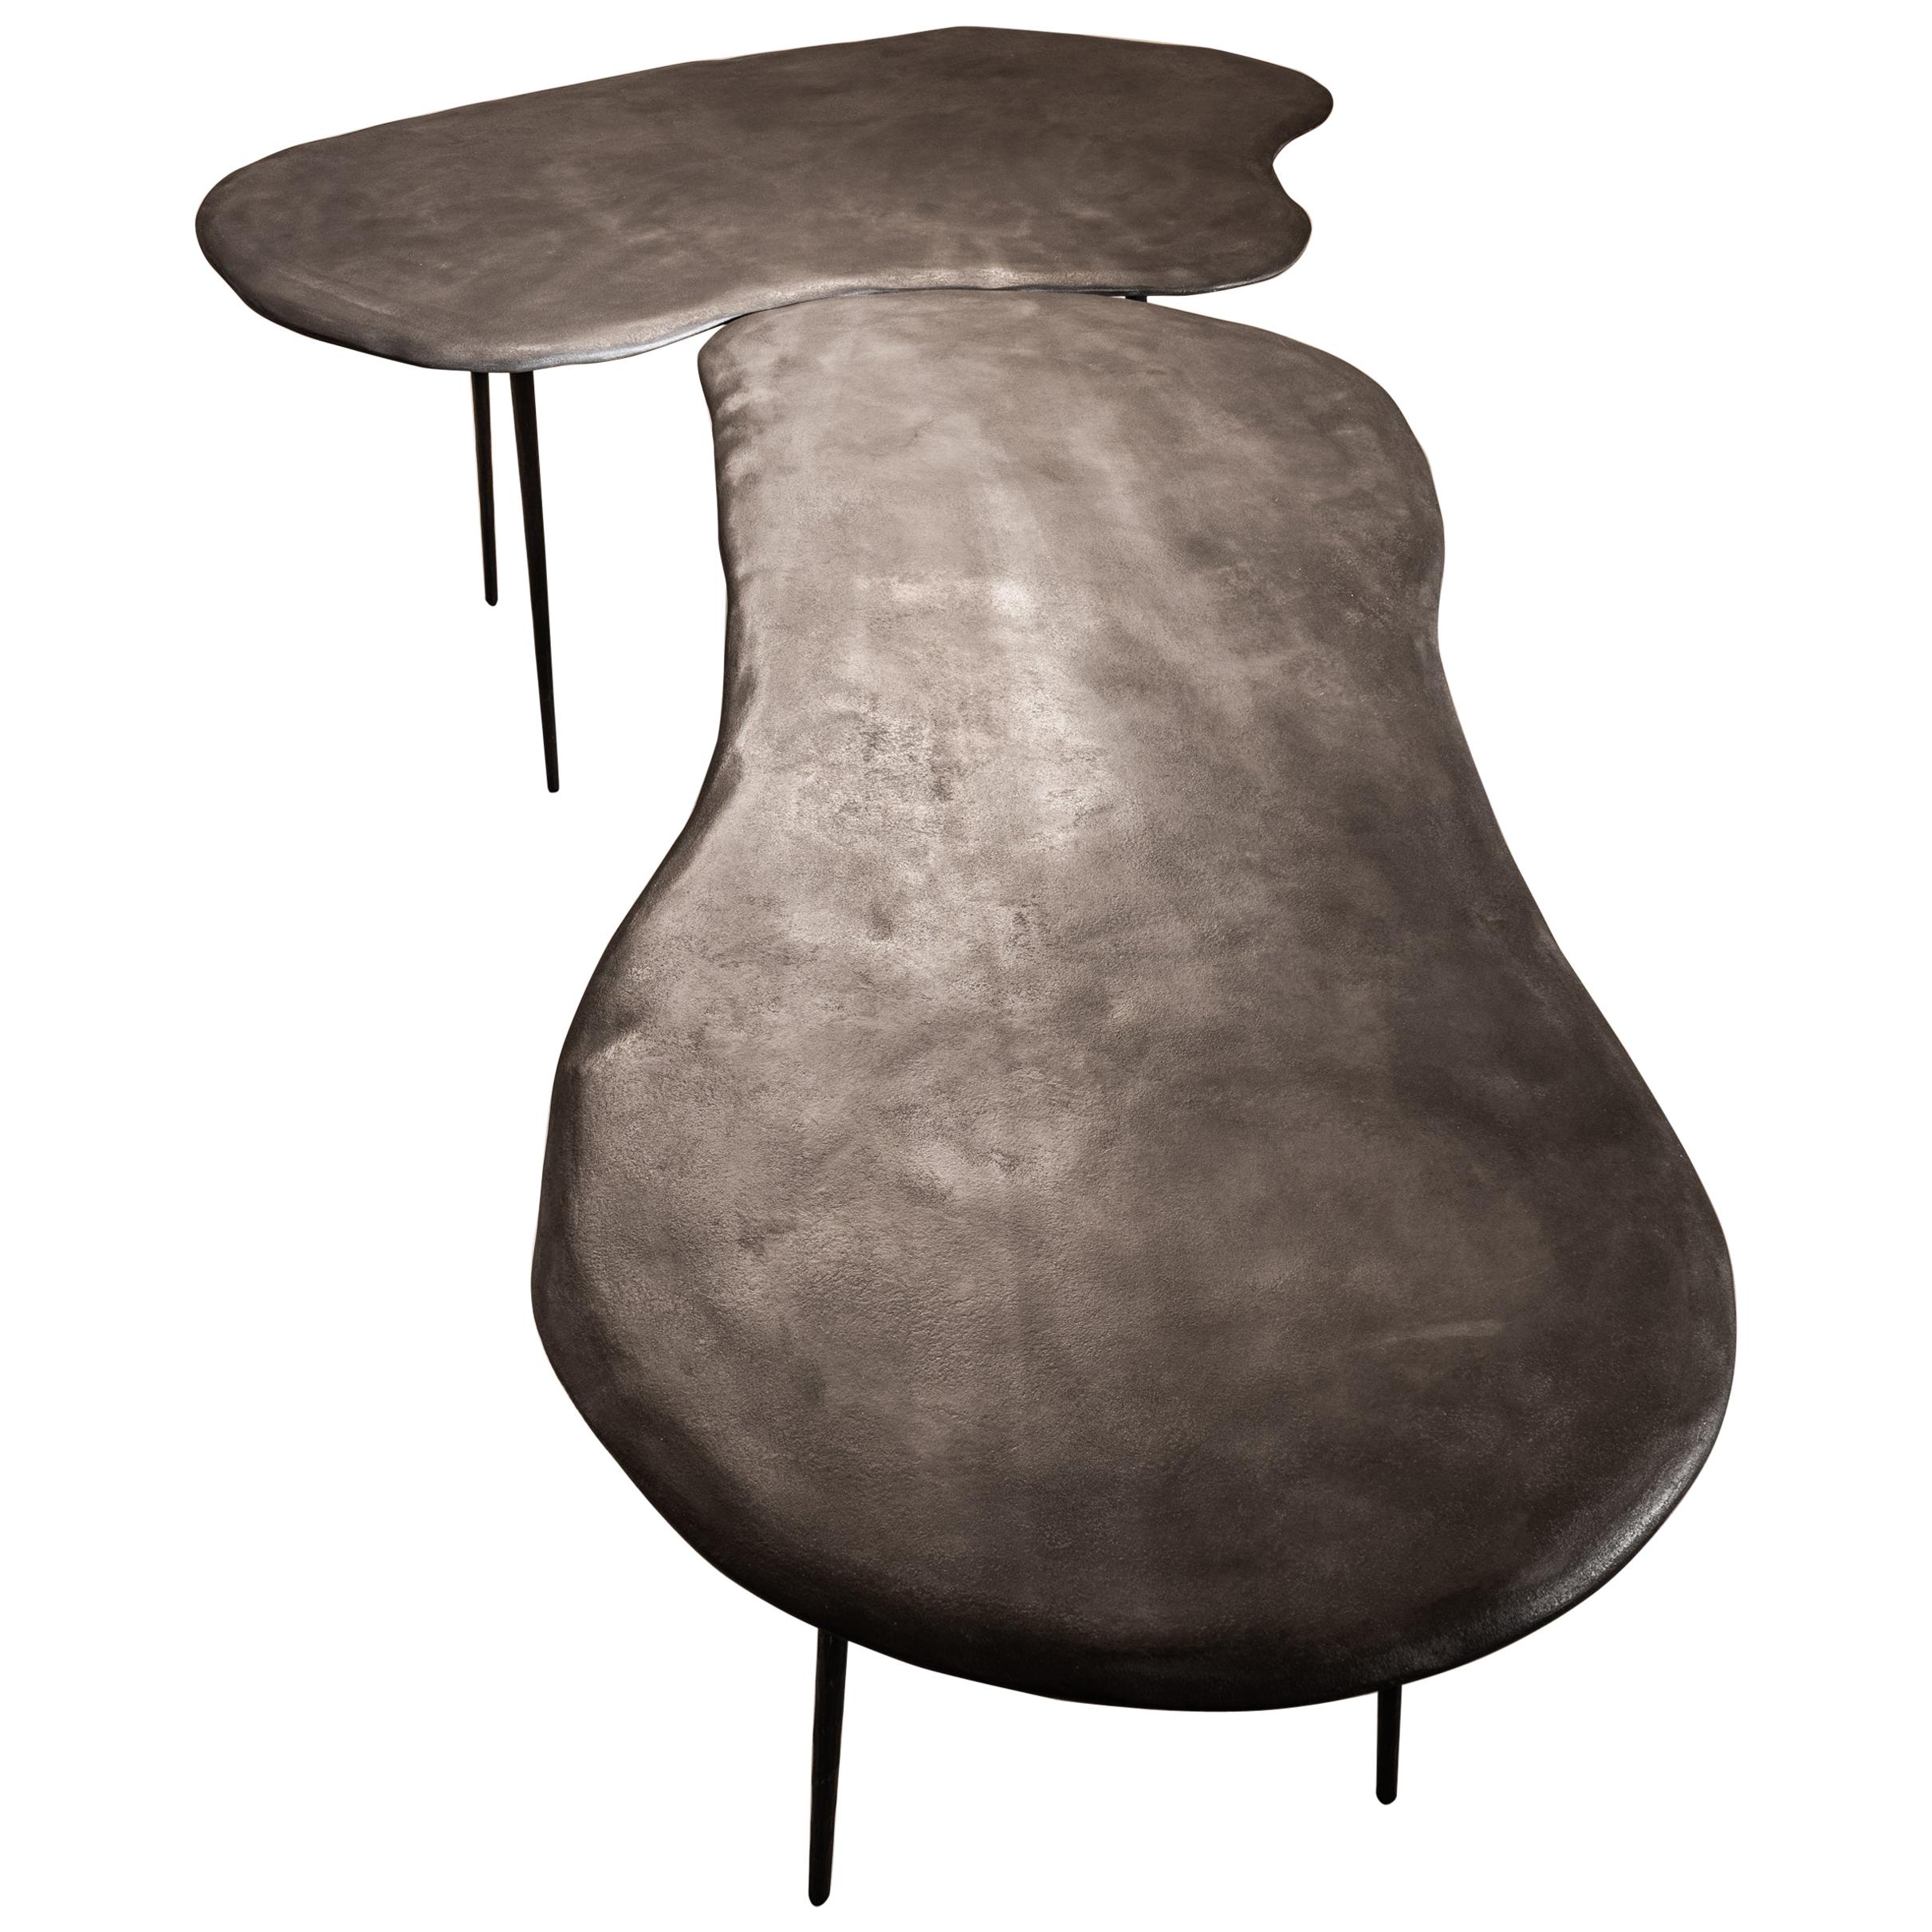 Duo de tables Varenna par Studio Emblématique